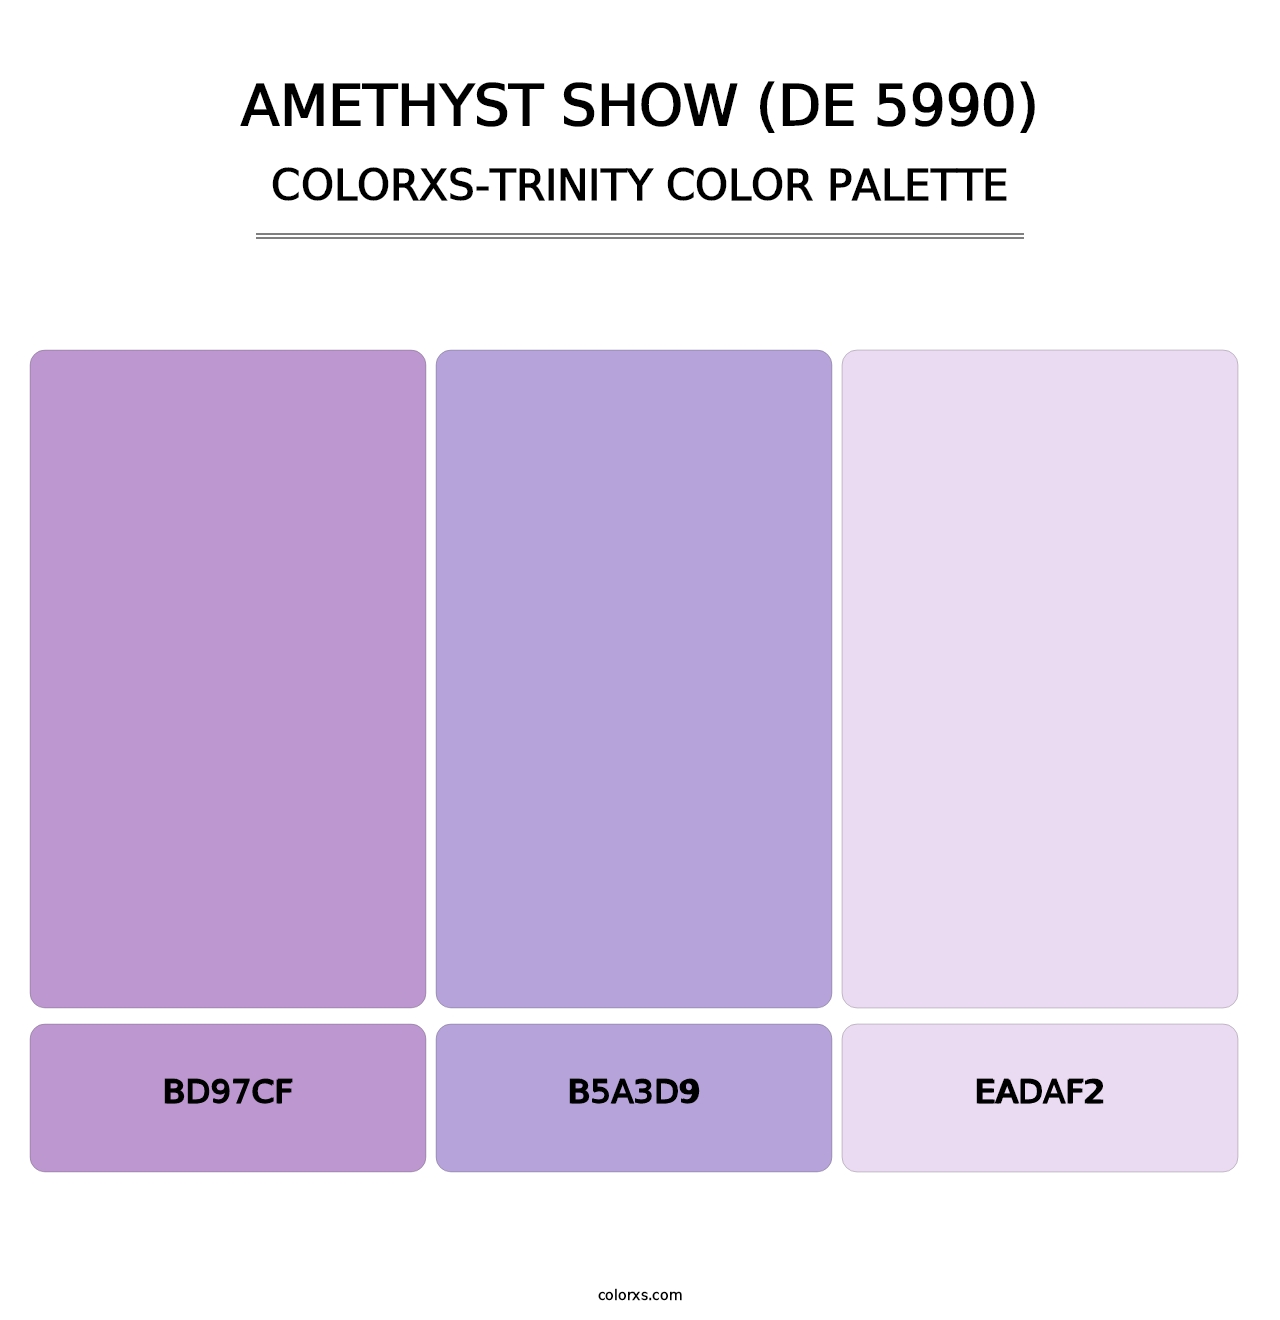 Amethyst Show (DE 5990) - Colorxs Trinity Palette